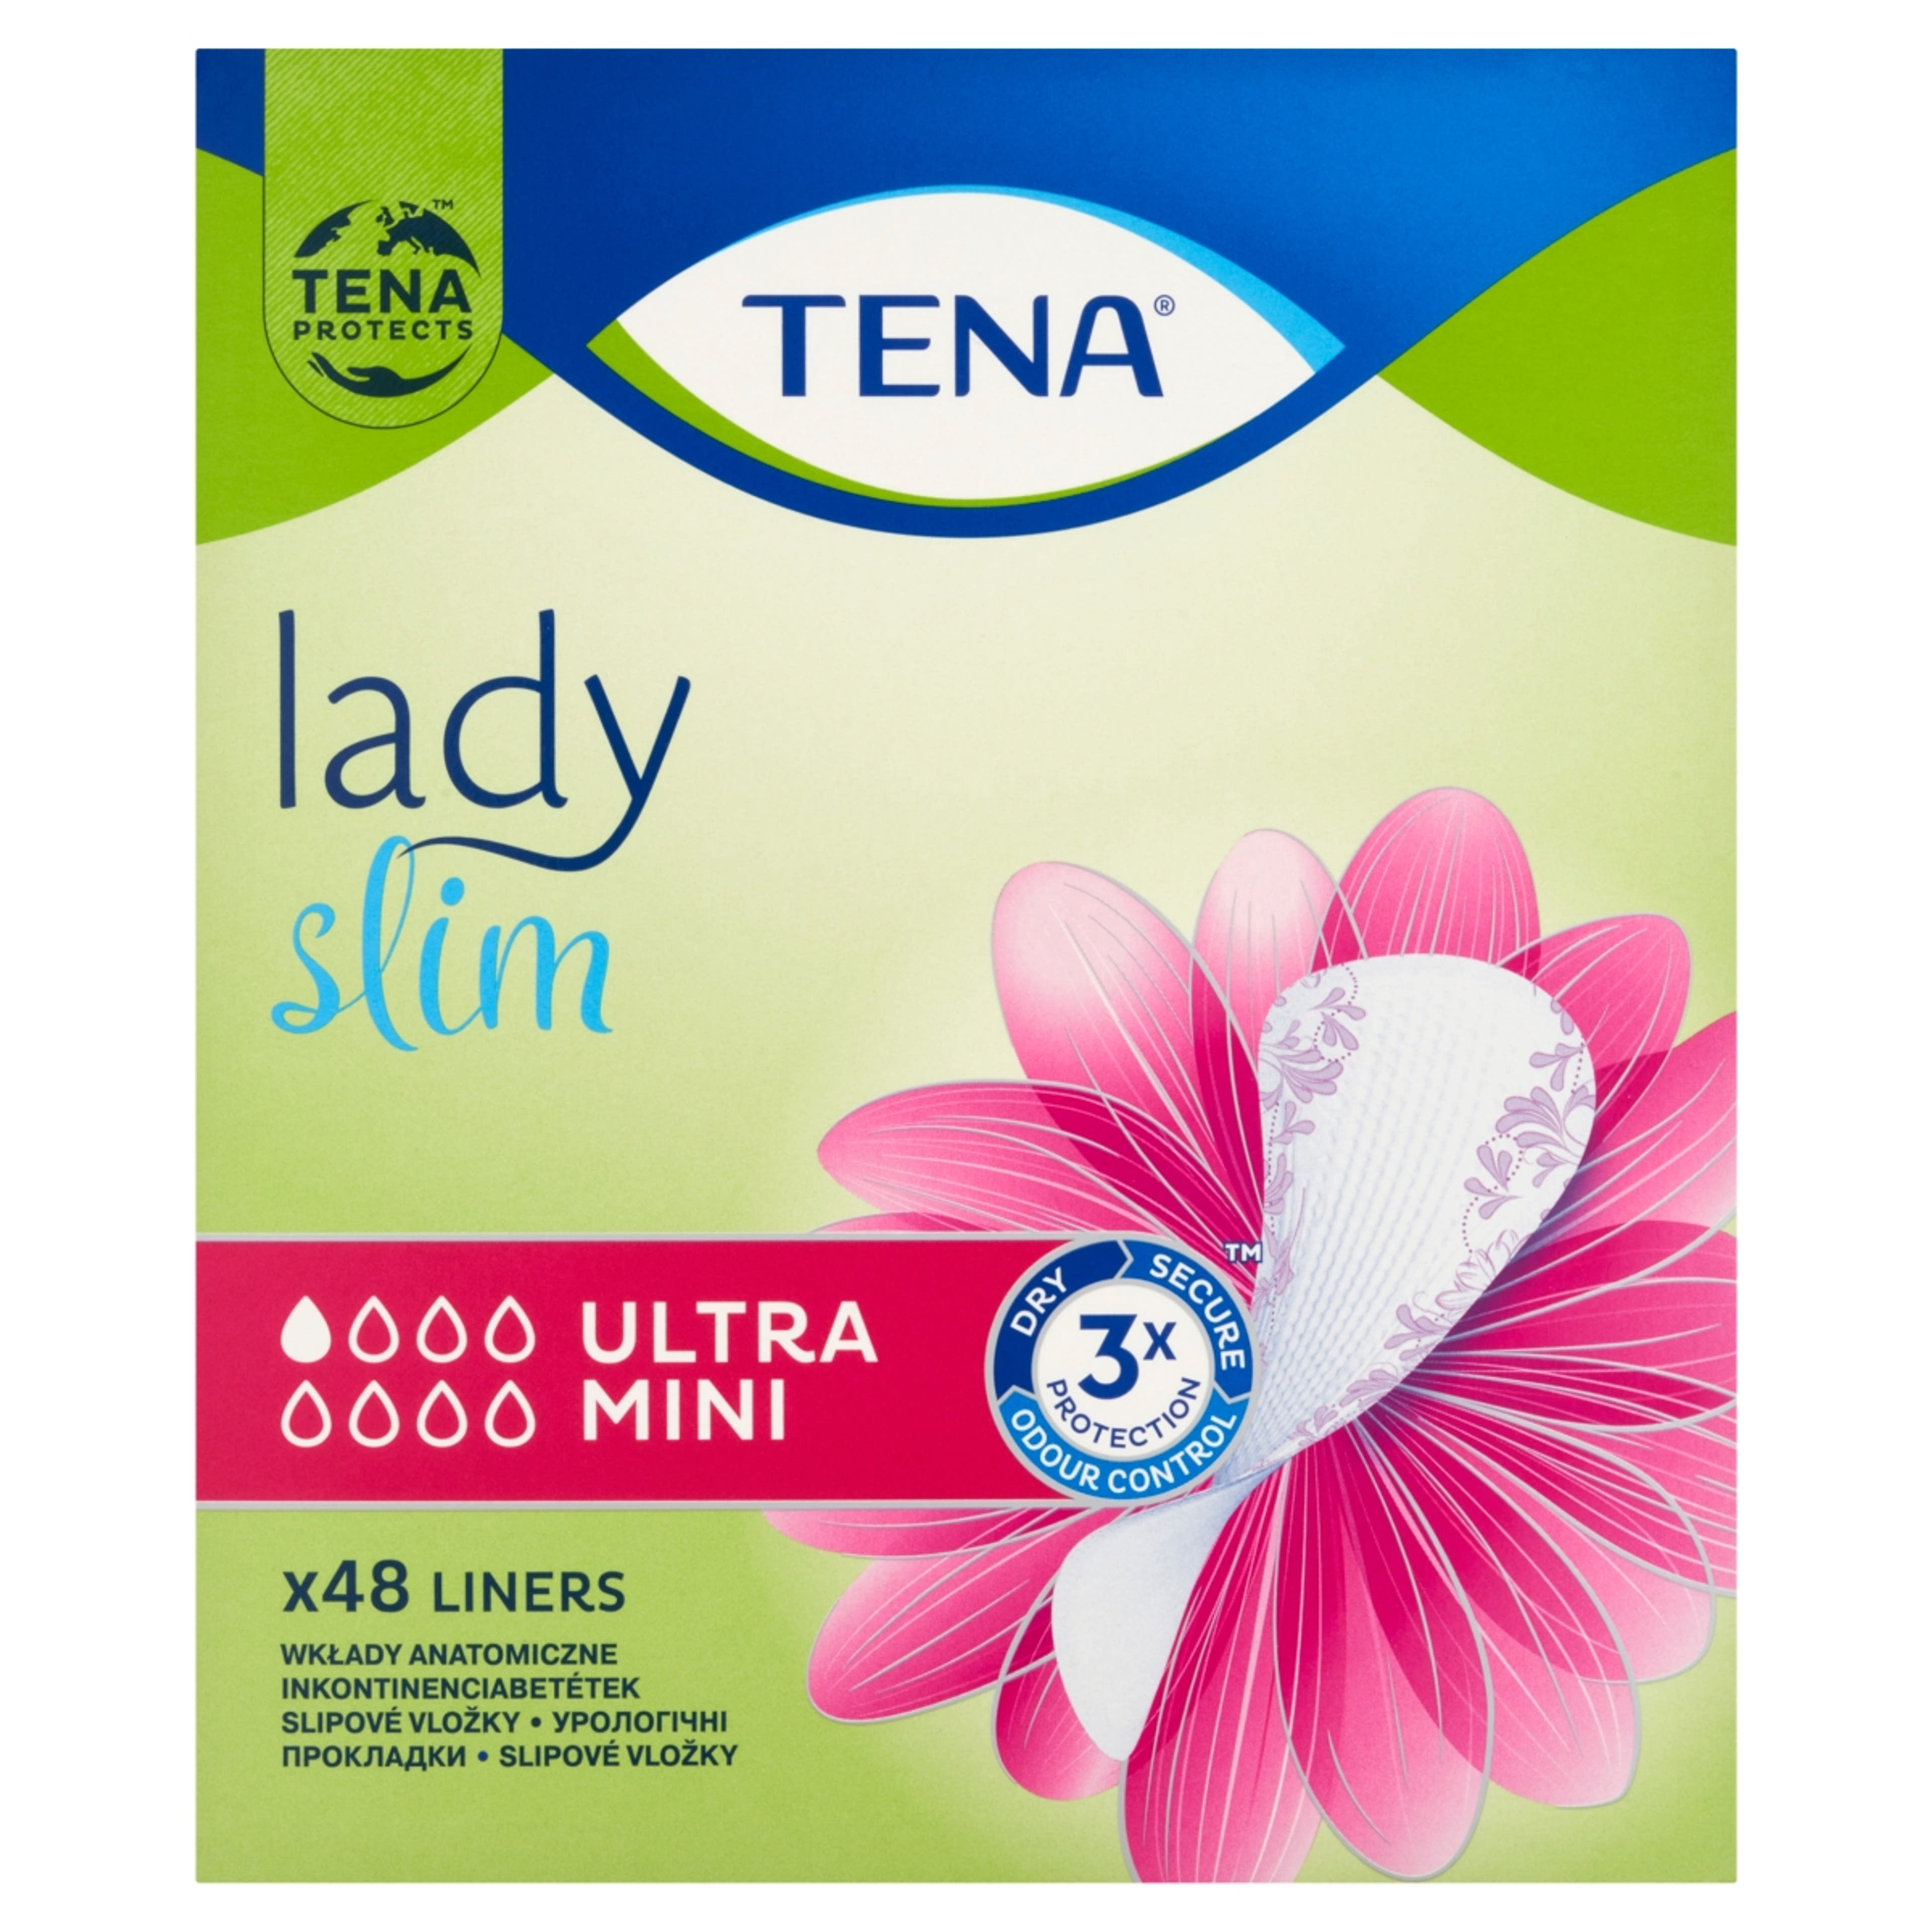 Tena Lady inkontinencia betét ultra mini slim - 1 db-1